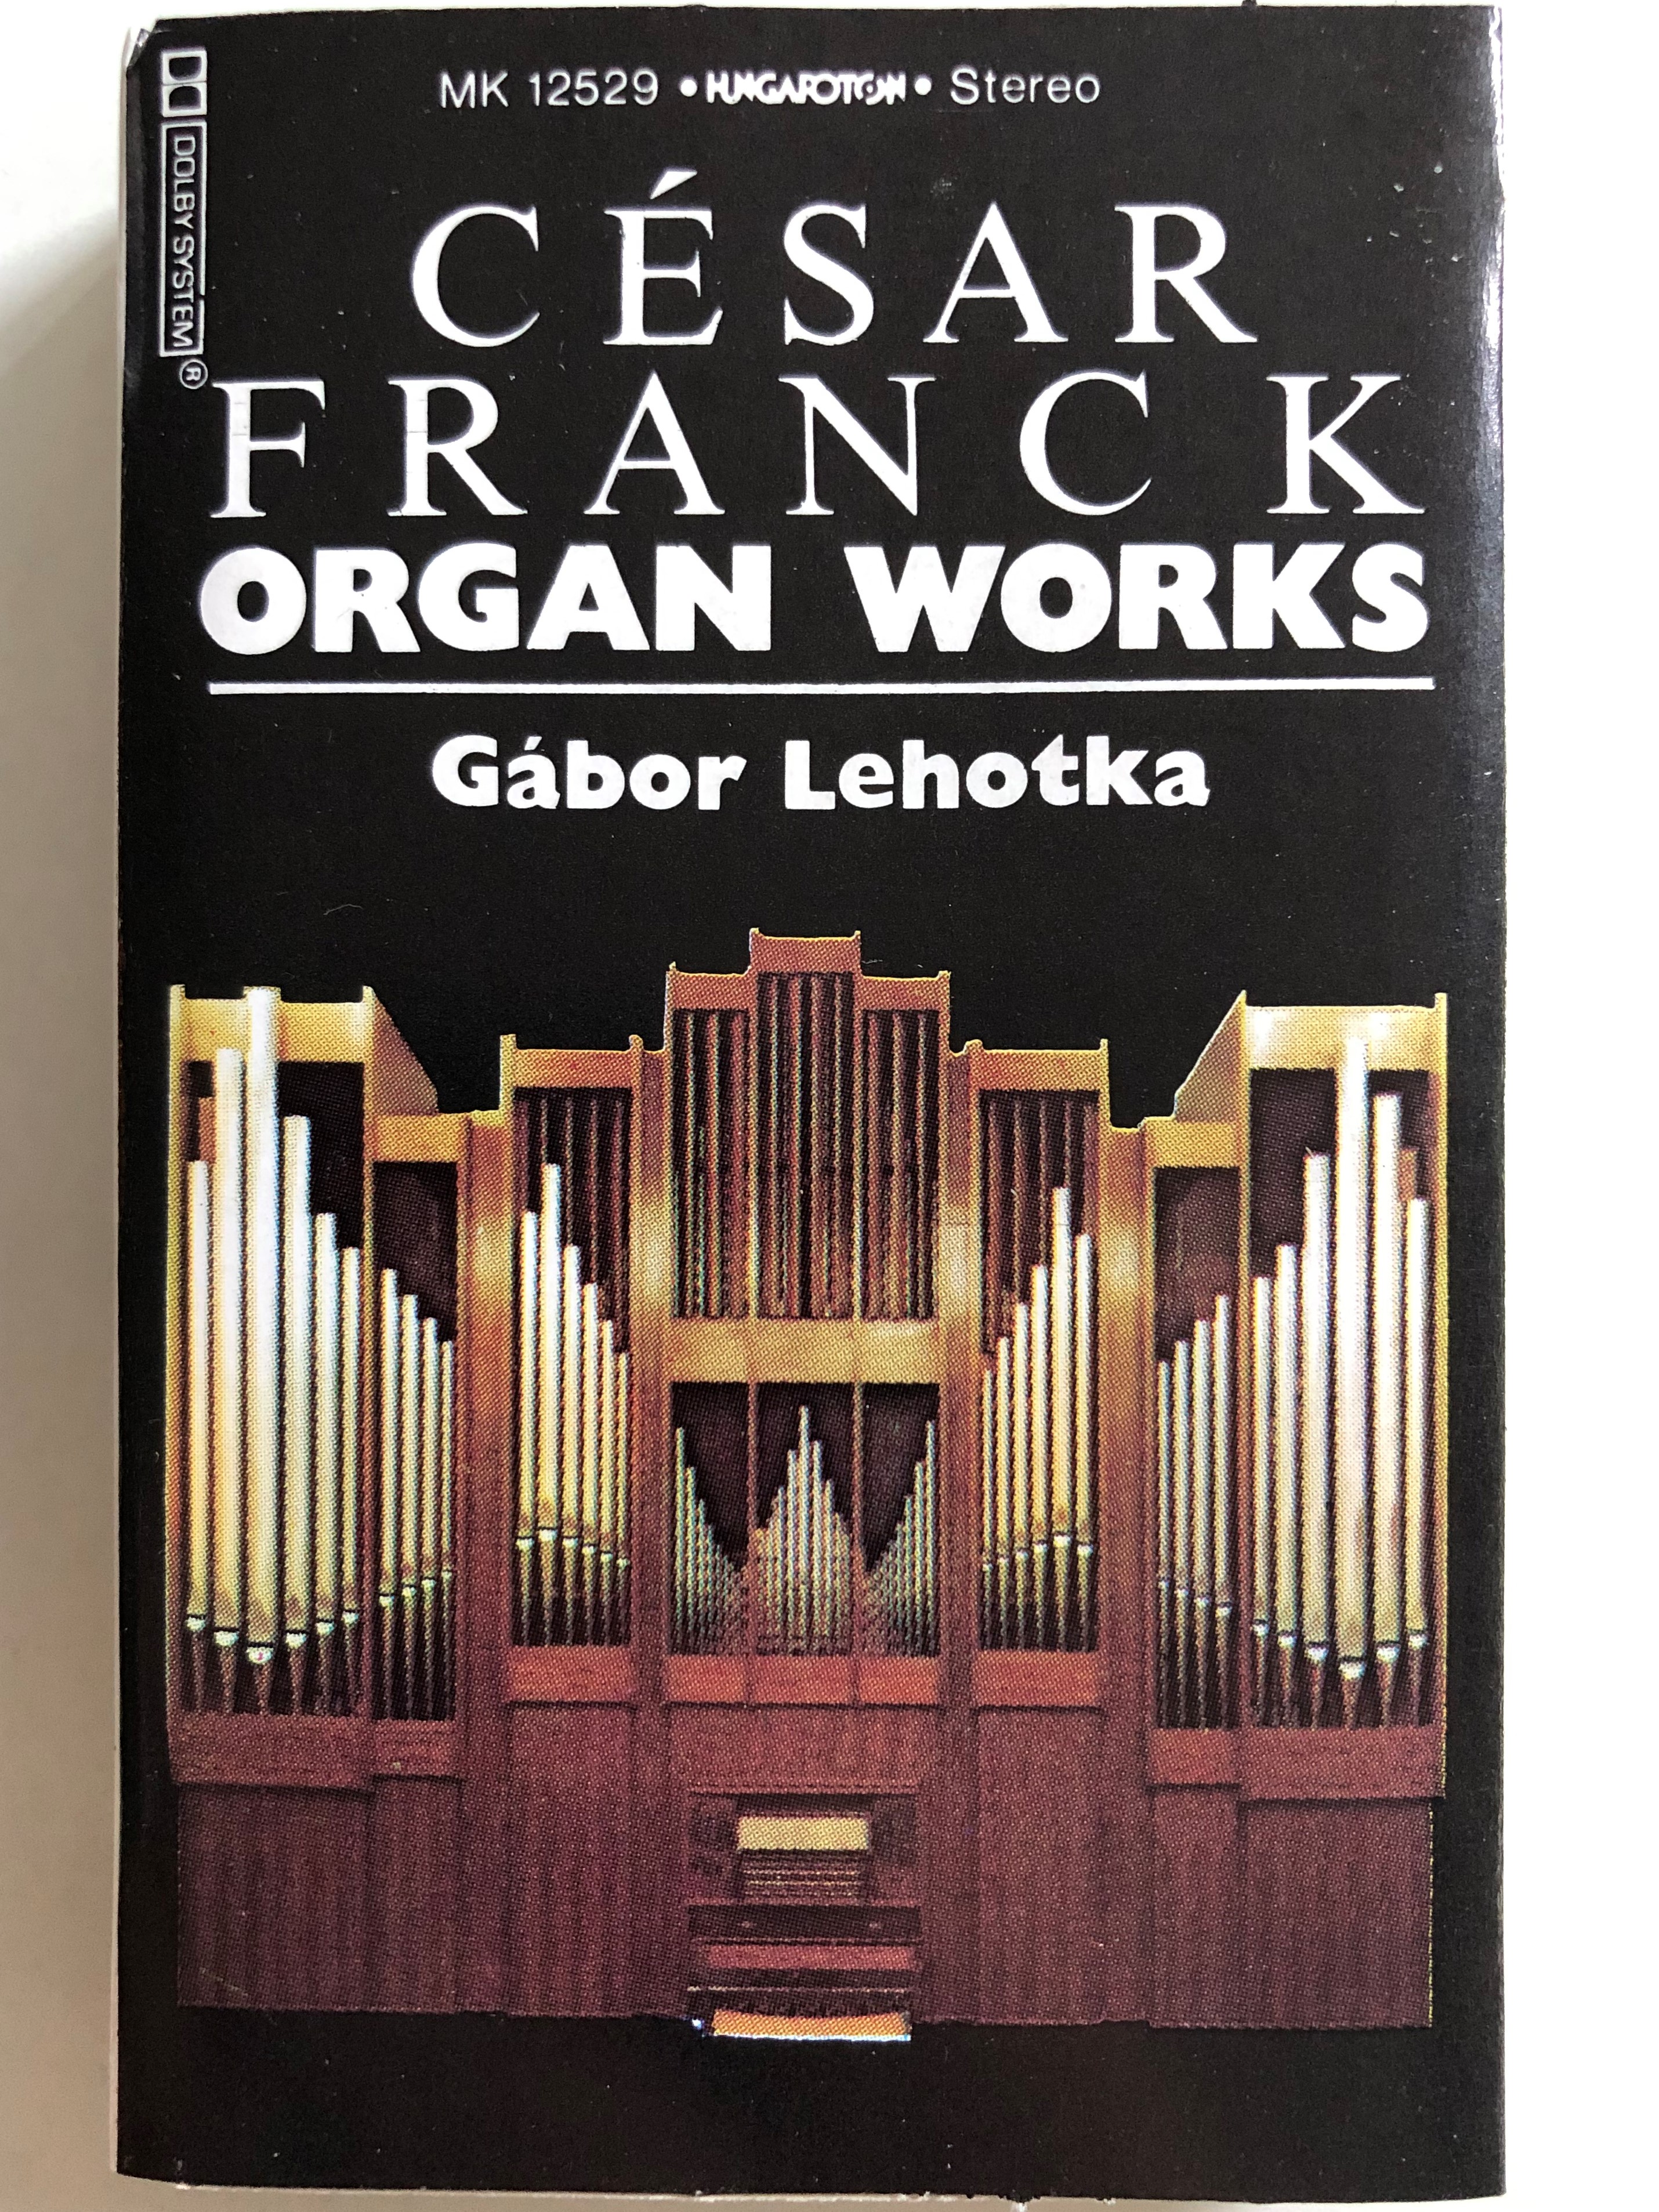 c-sar-franck-organ-works-g-bor-lehotka-hungaroton-cassette-stereo-mk-12529-1-.jpg